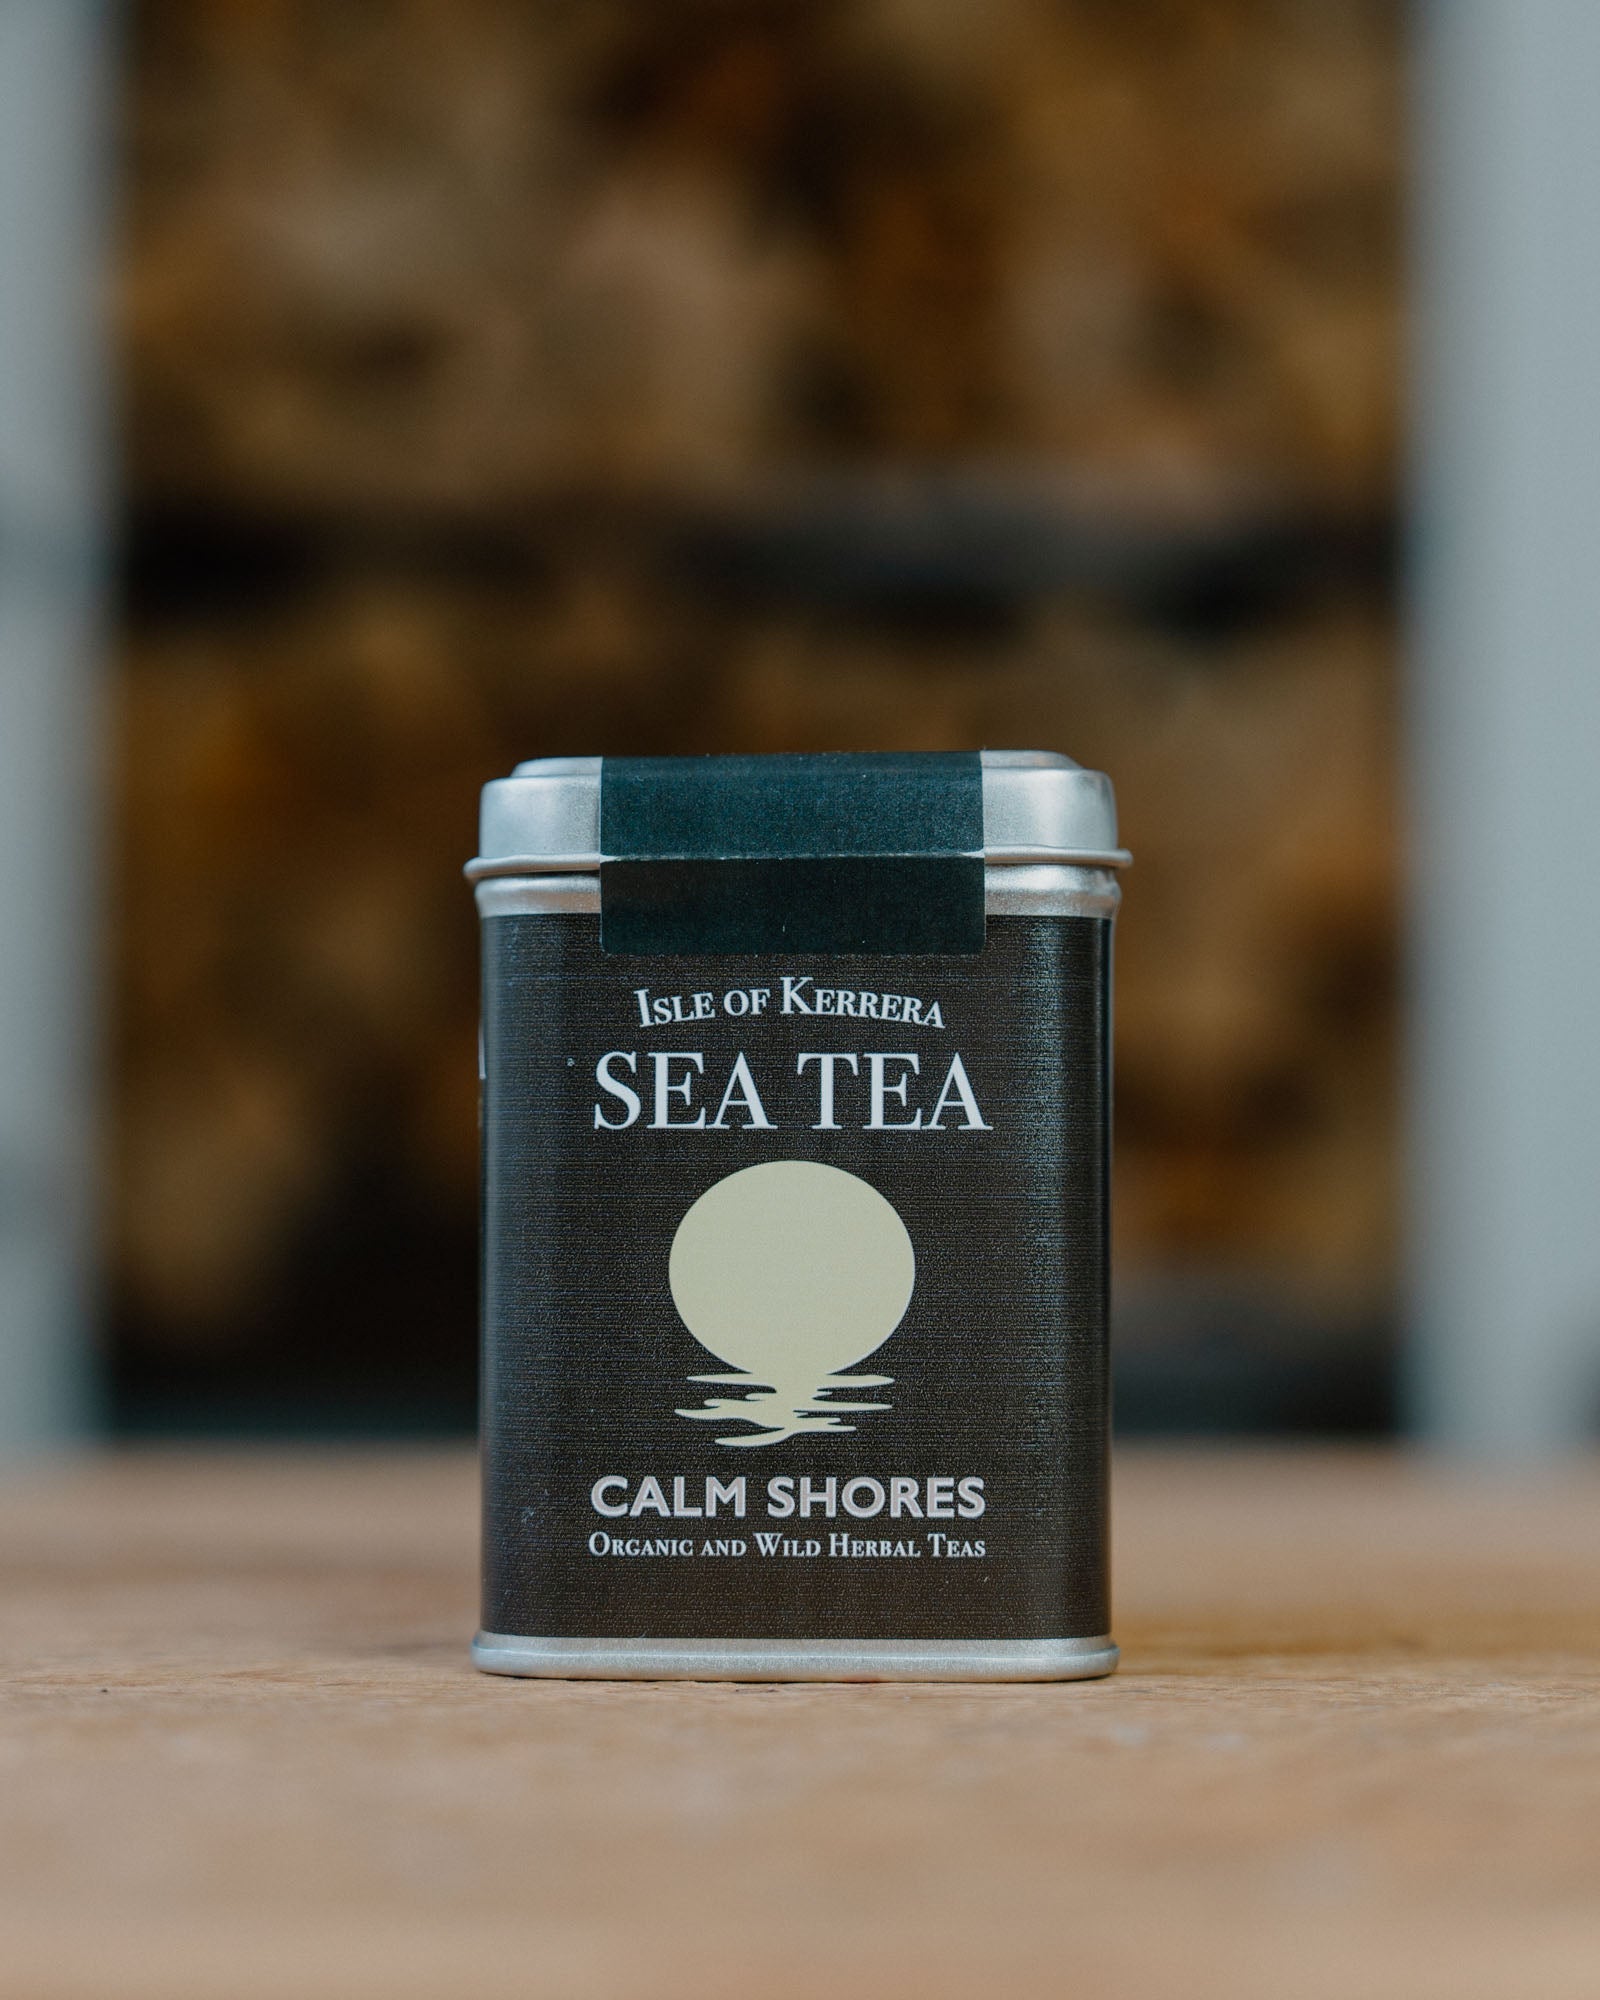 Calm Shores Herbal Tea - Hidden Scotland